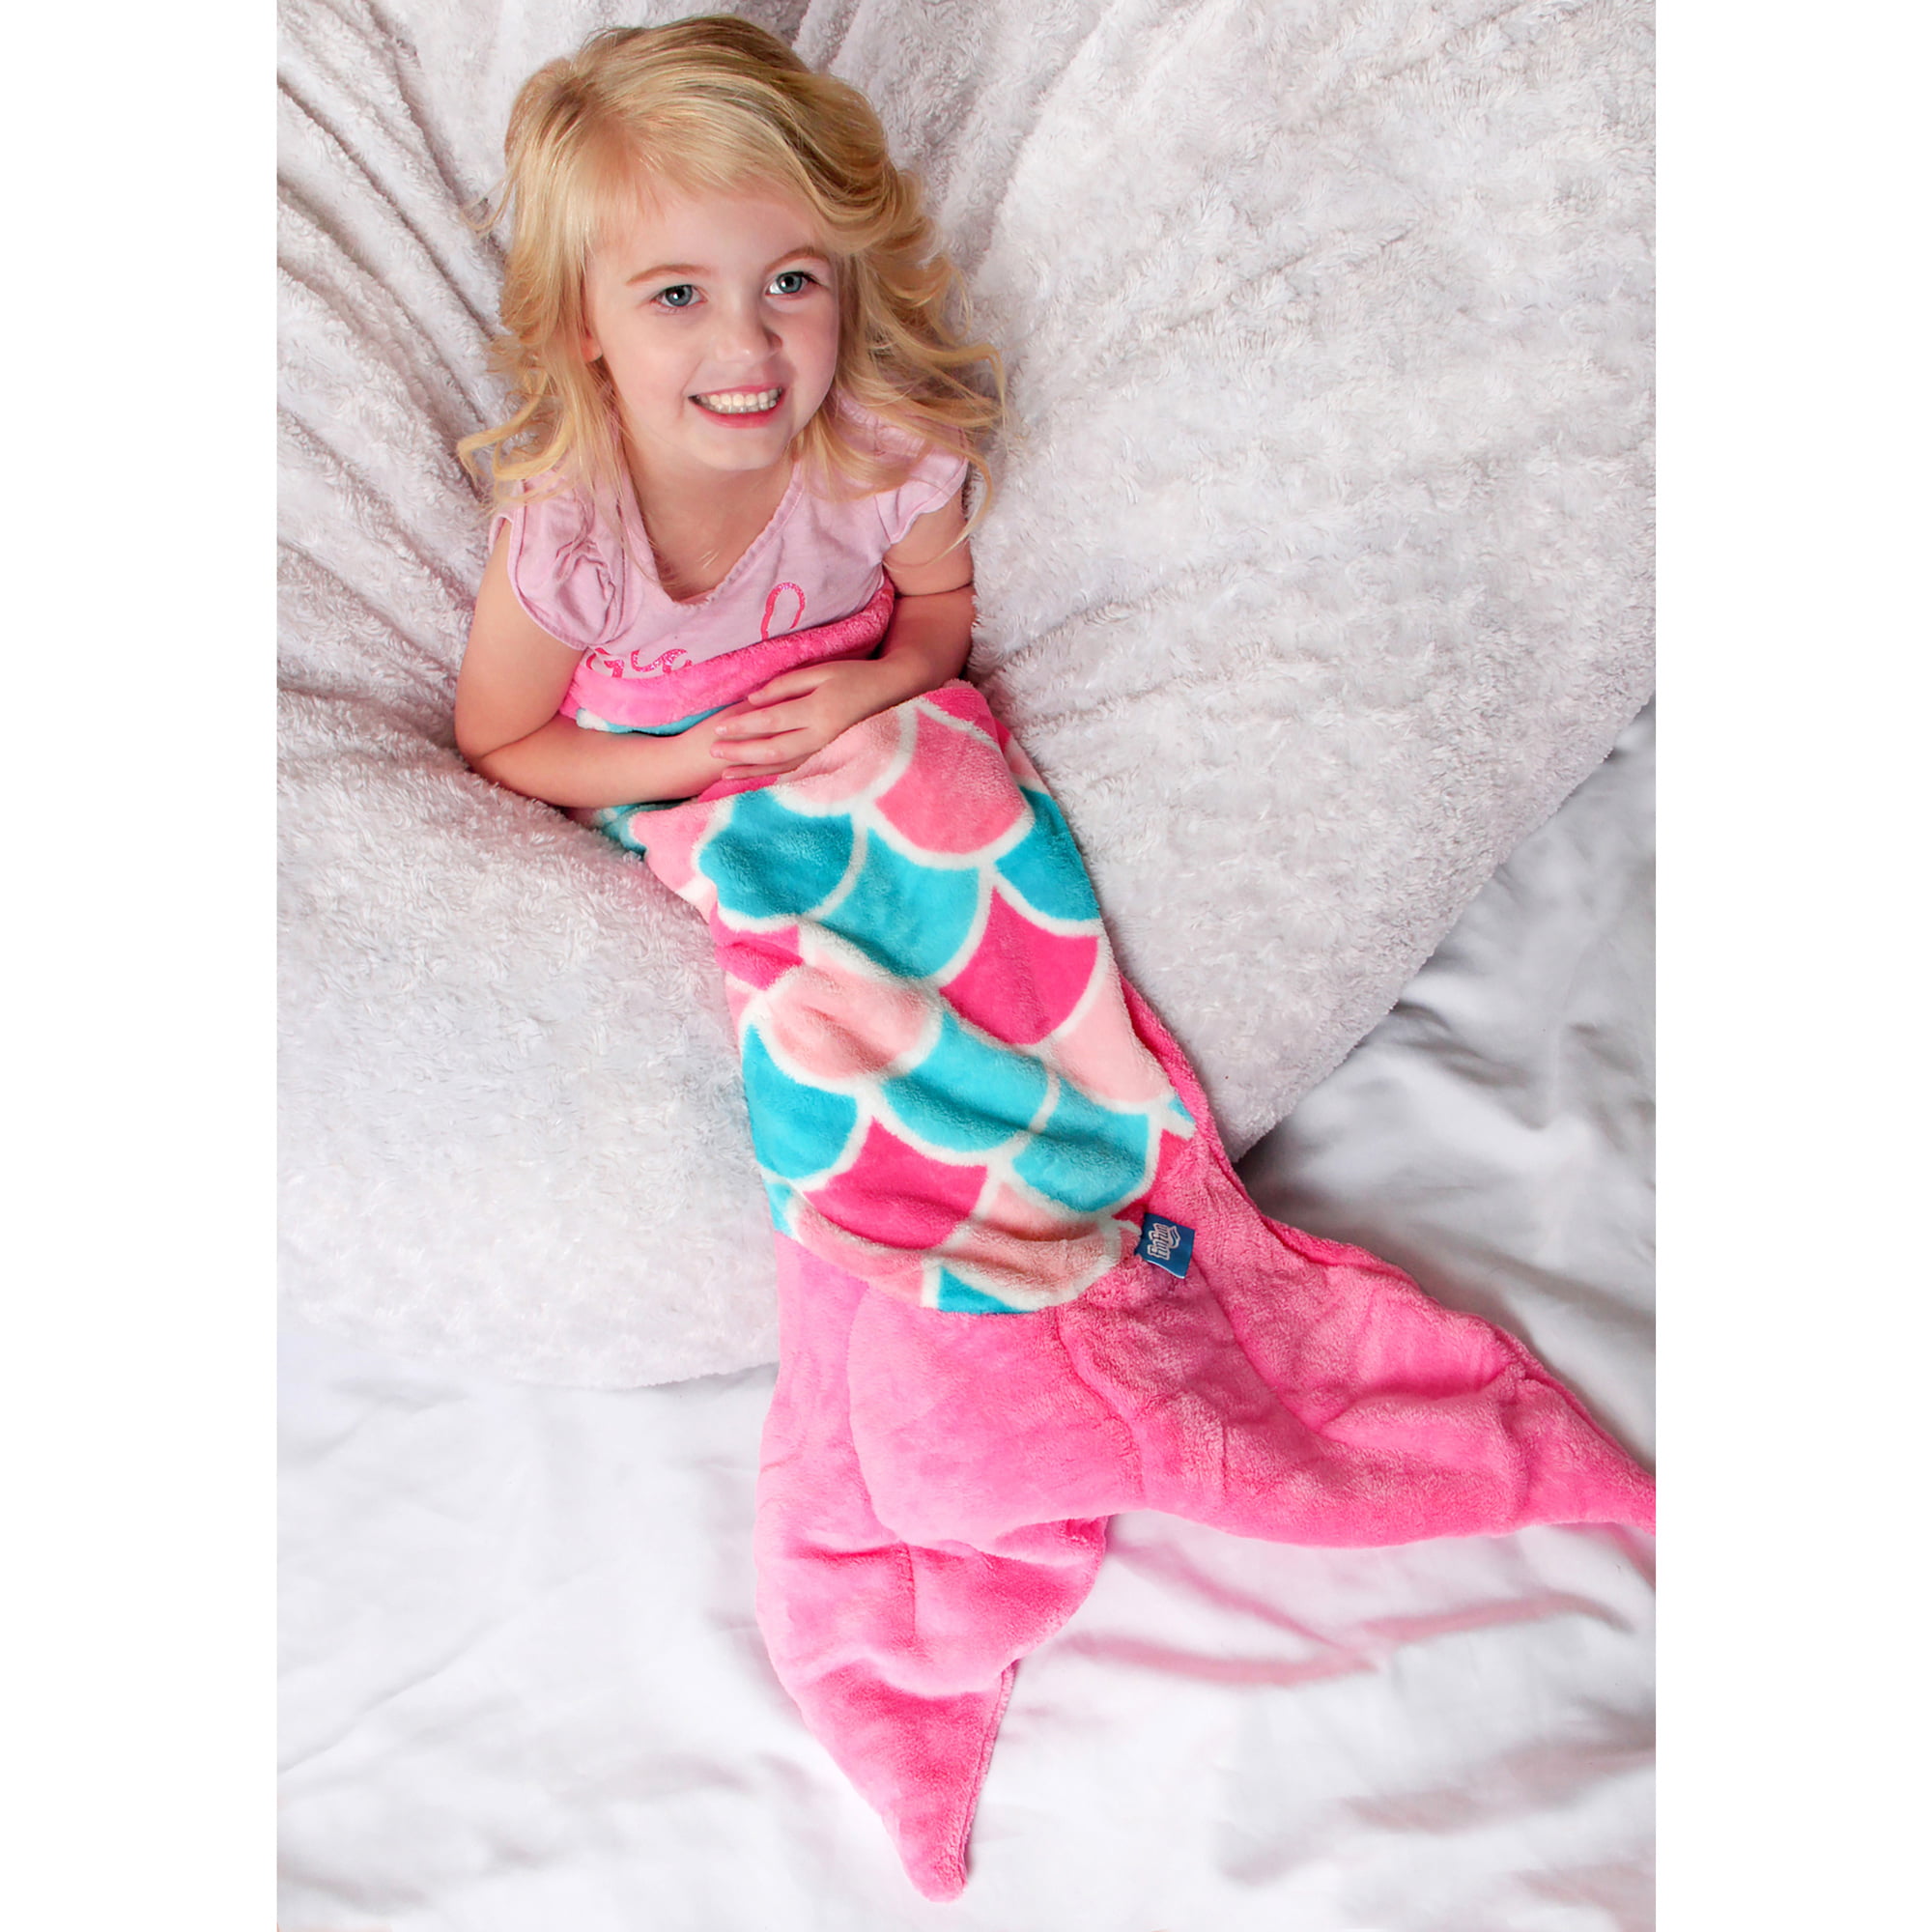 Viviland Kids Mermaid Tail Blanket for Girls Toddlers Teens,All Seasons Super Comfty Flannel Fleece Mermaid Sleeping Bag,Rainbow Mermaid Blanket,Best Gifts for Girls,17×39